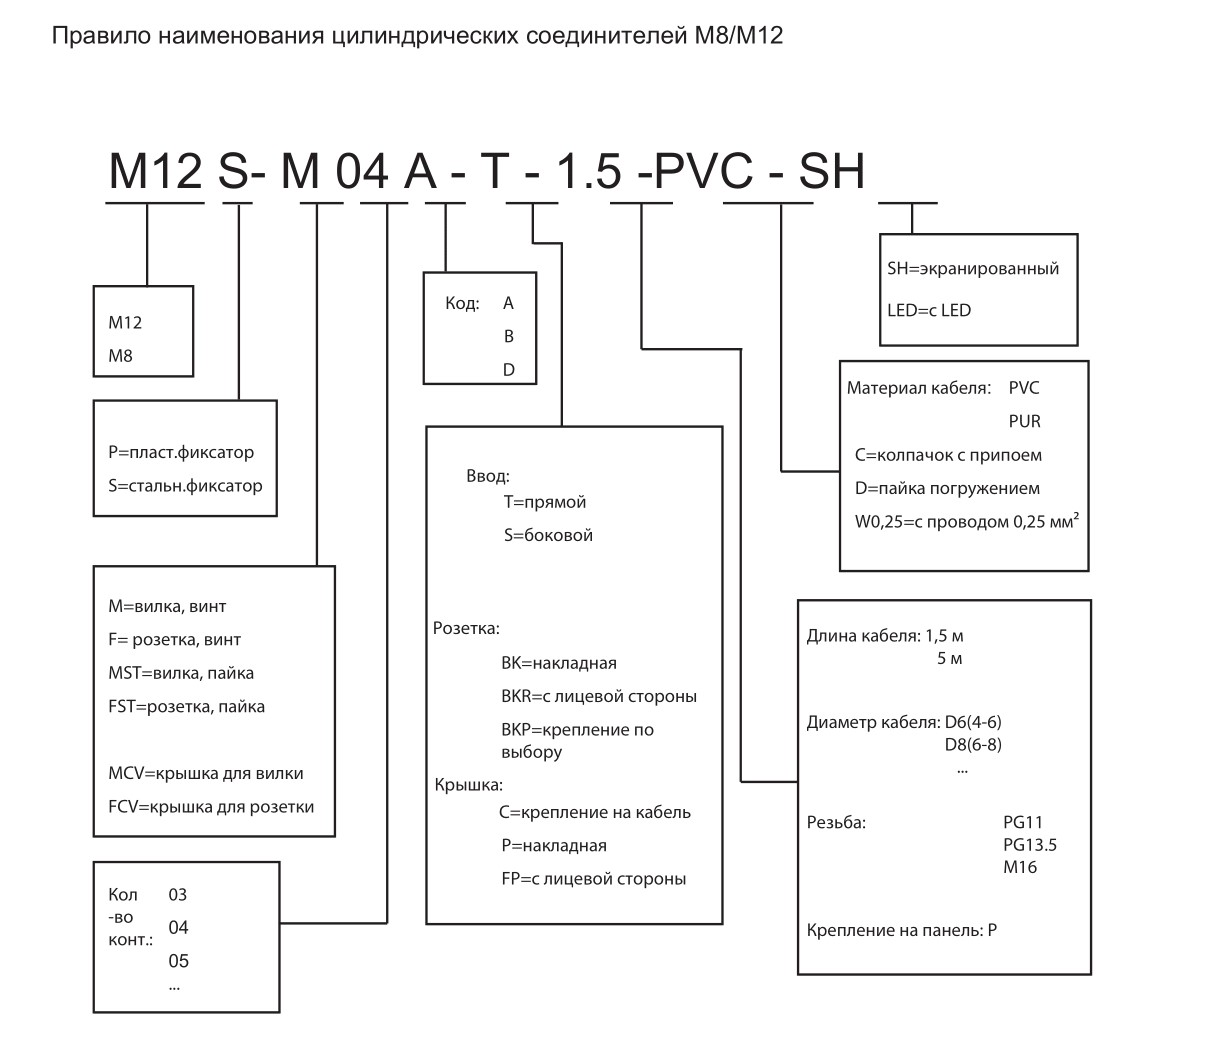 Цилиндрический соединитель-розетка M12-F04D-BK-PG9-C 1632043241002: Структура обозначения